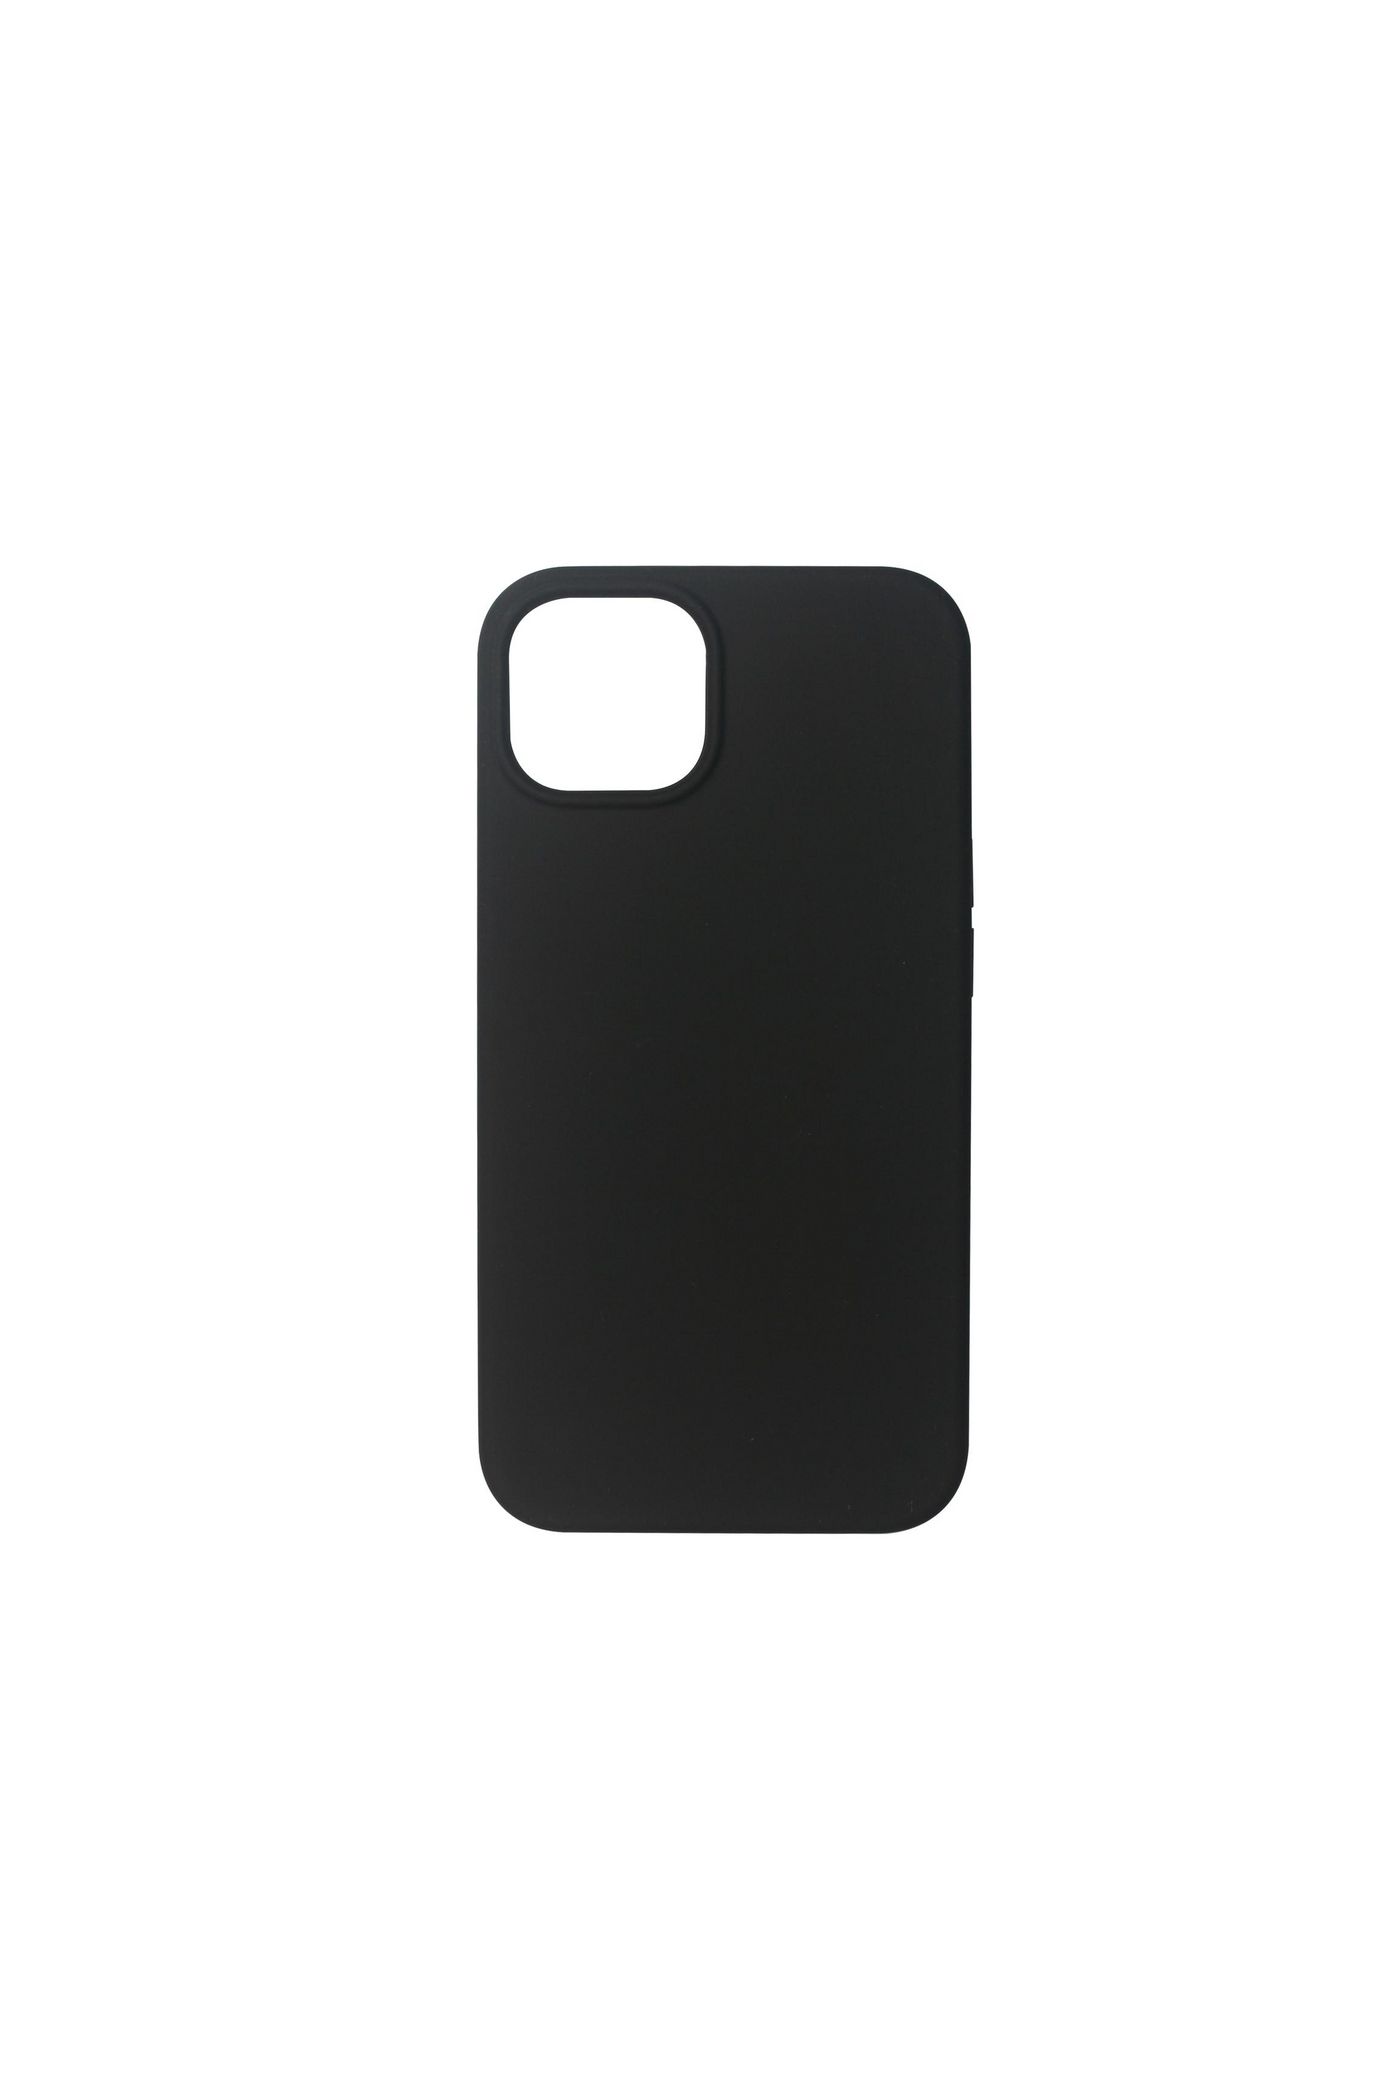 ESTUFF - Hintere Abdeckung für Mobiltelefon - Silikon - Schwarz - für Apple iPhone 13 mini